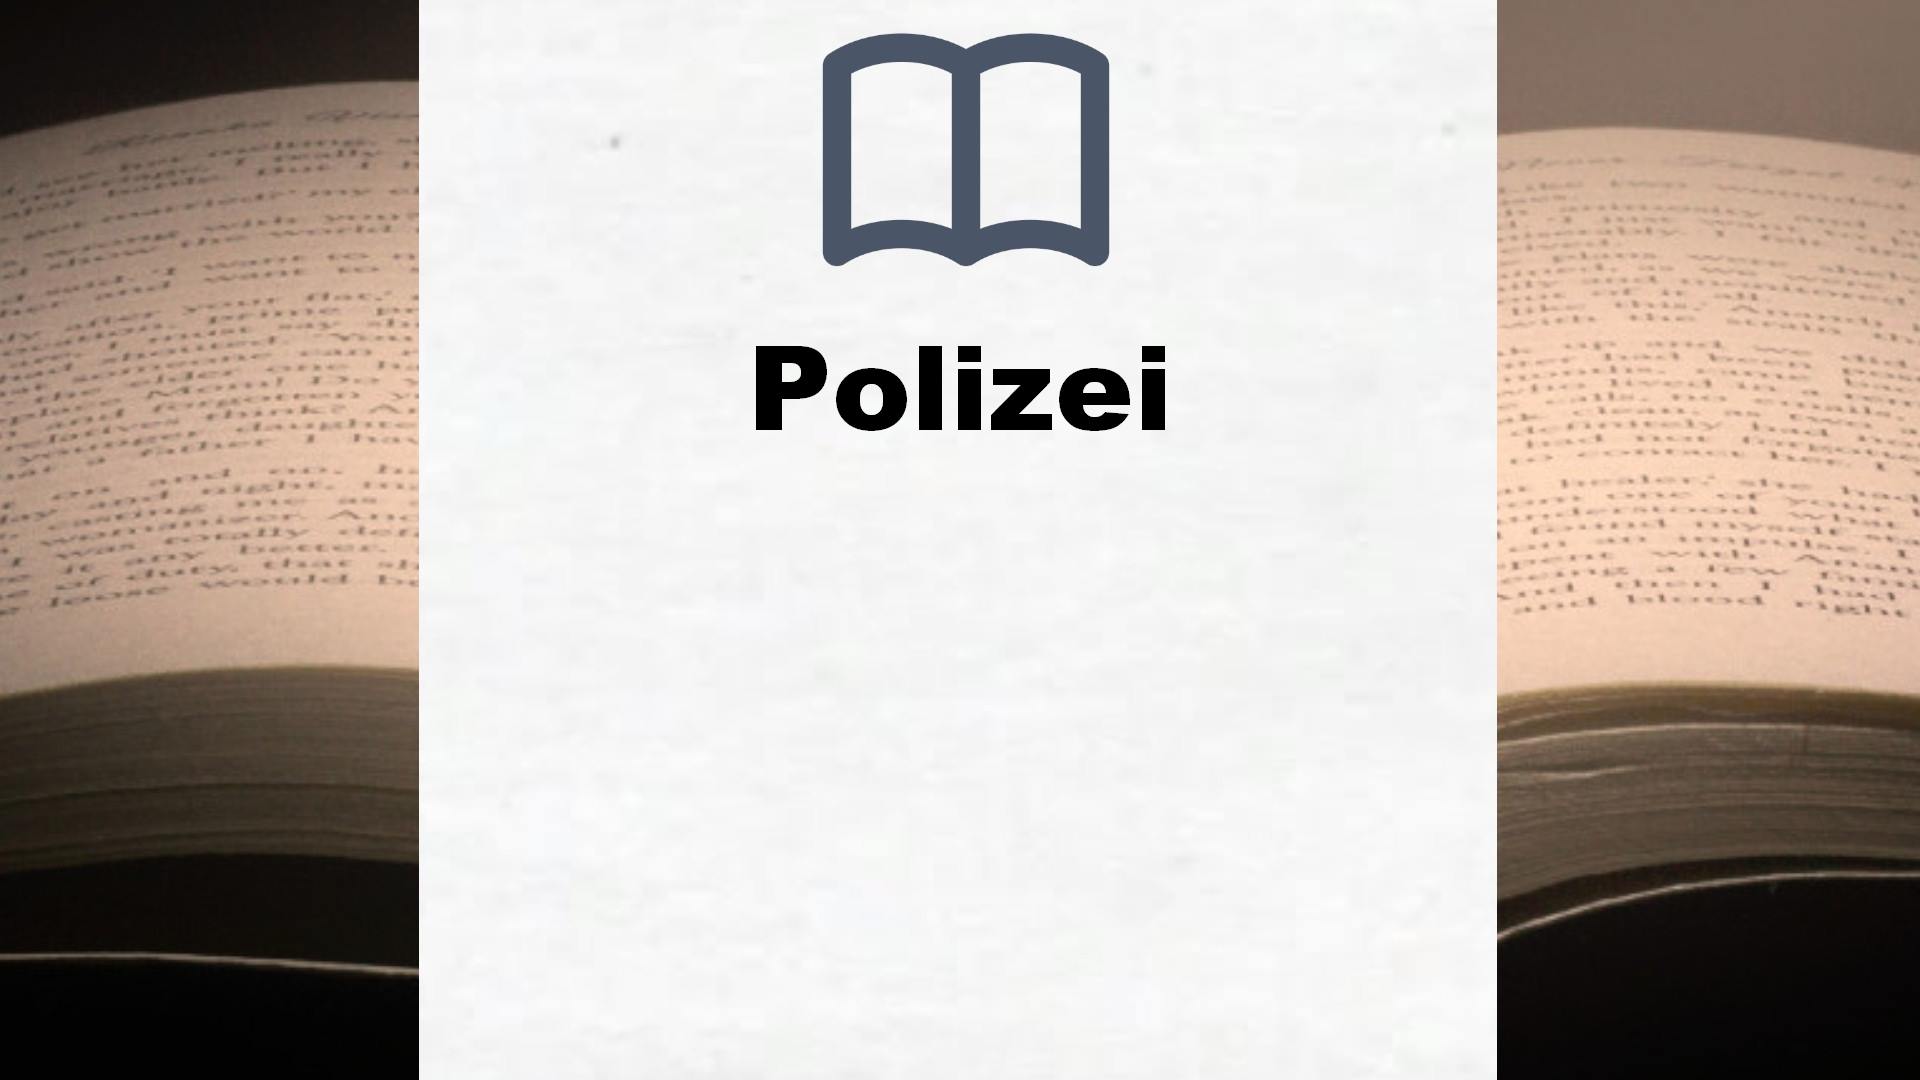 Bücher über Polizei